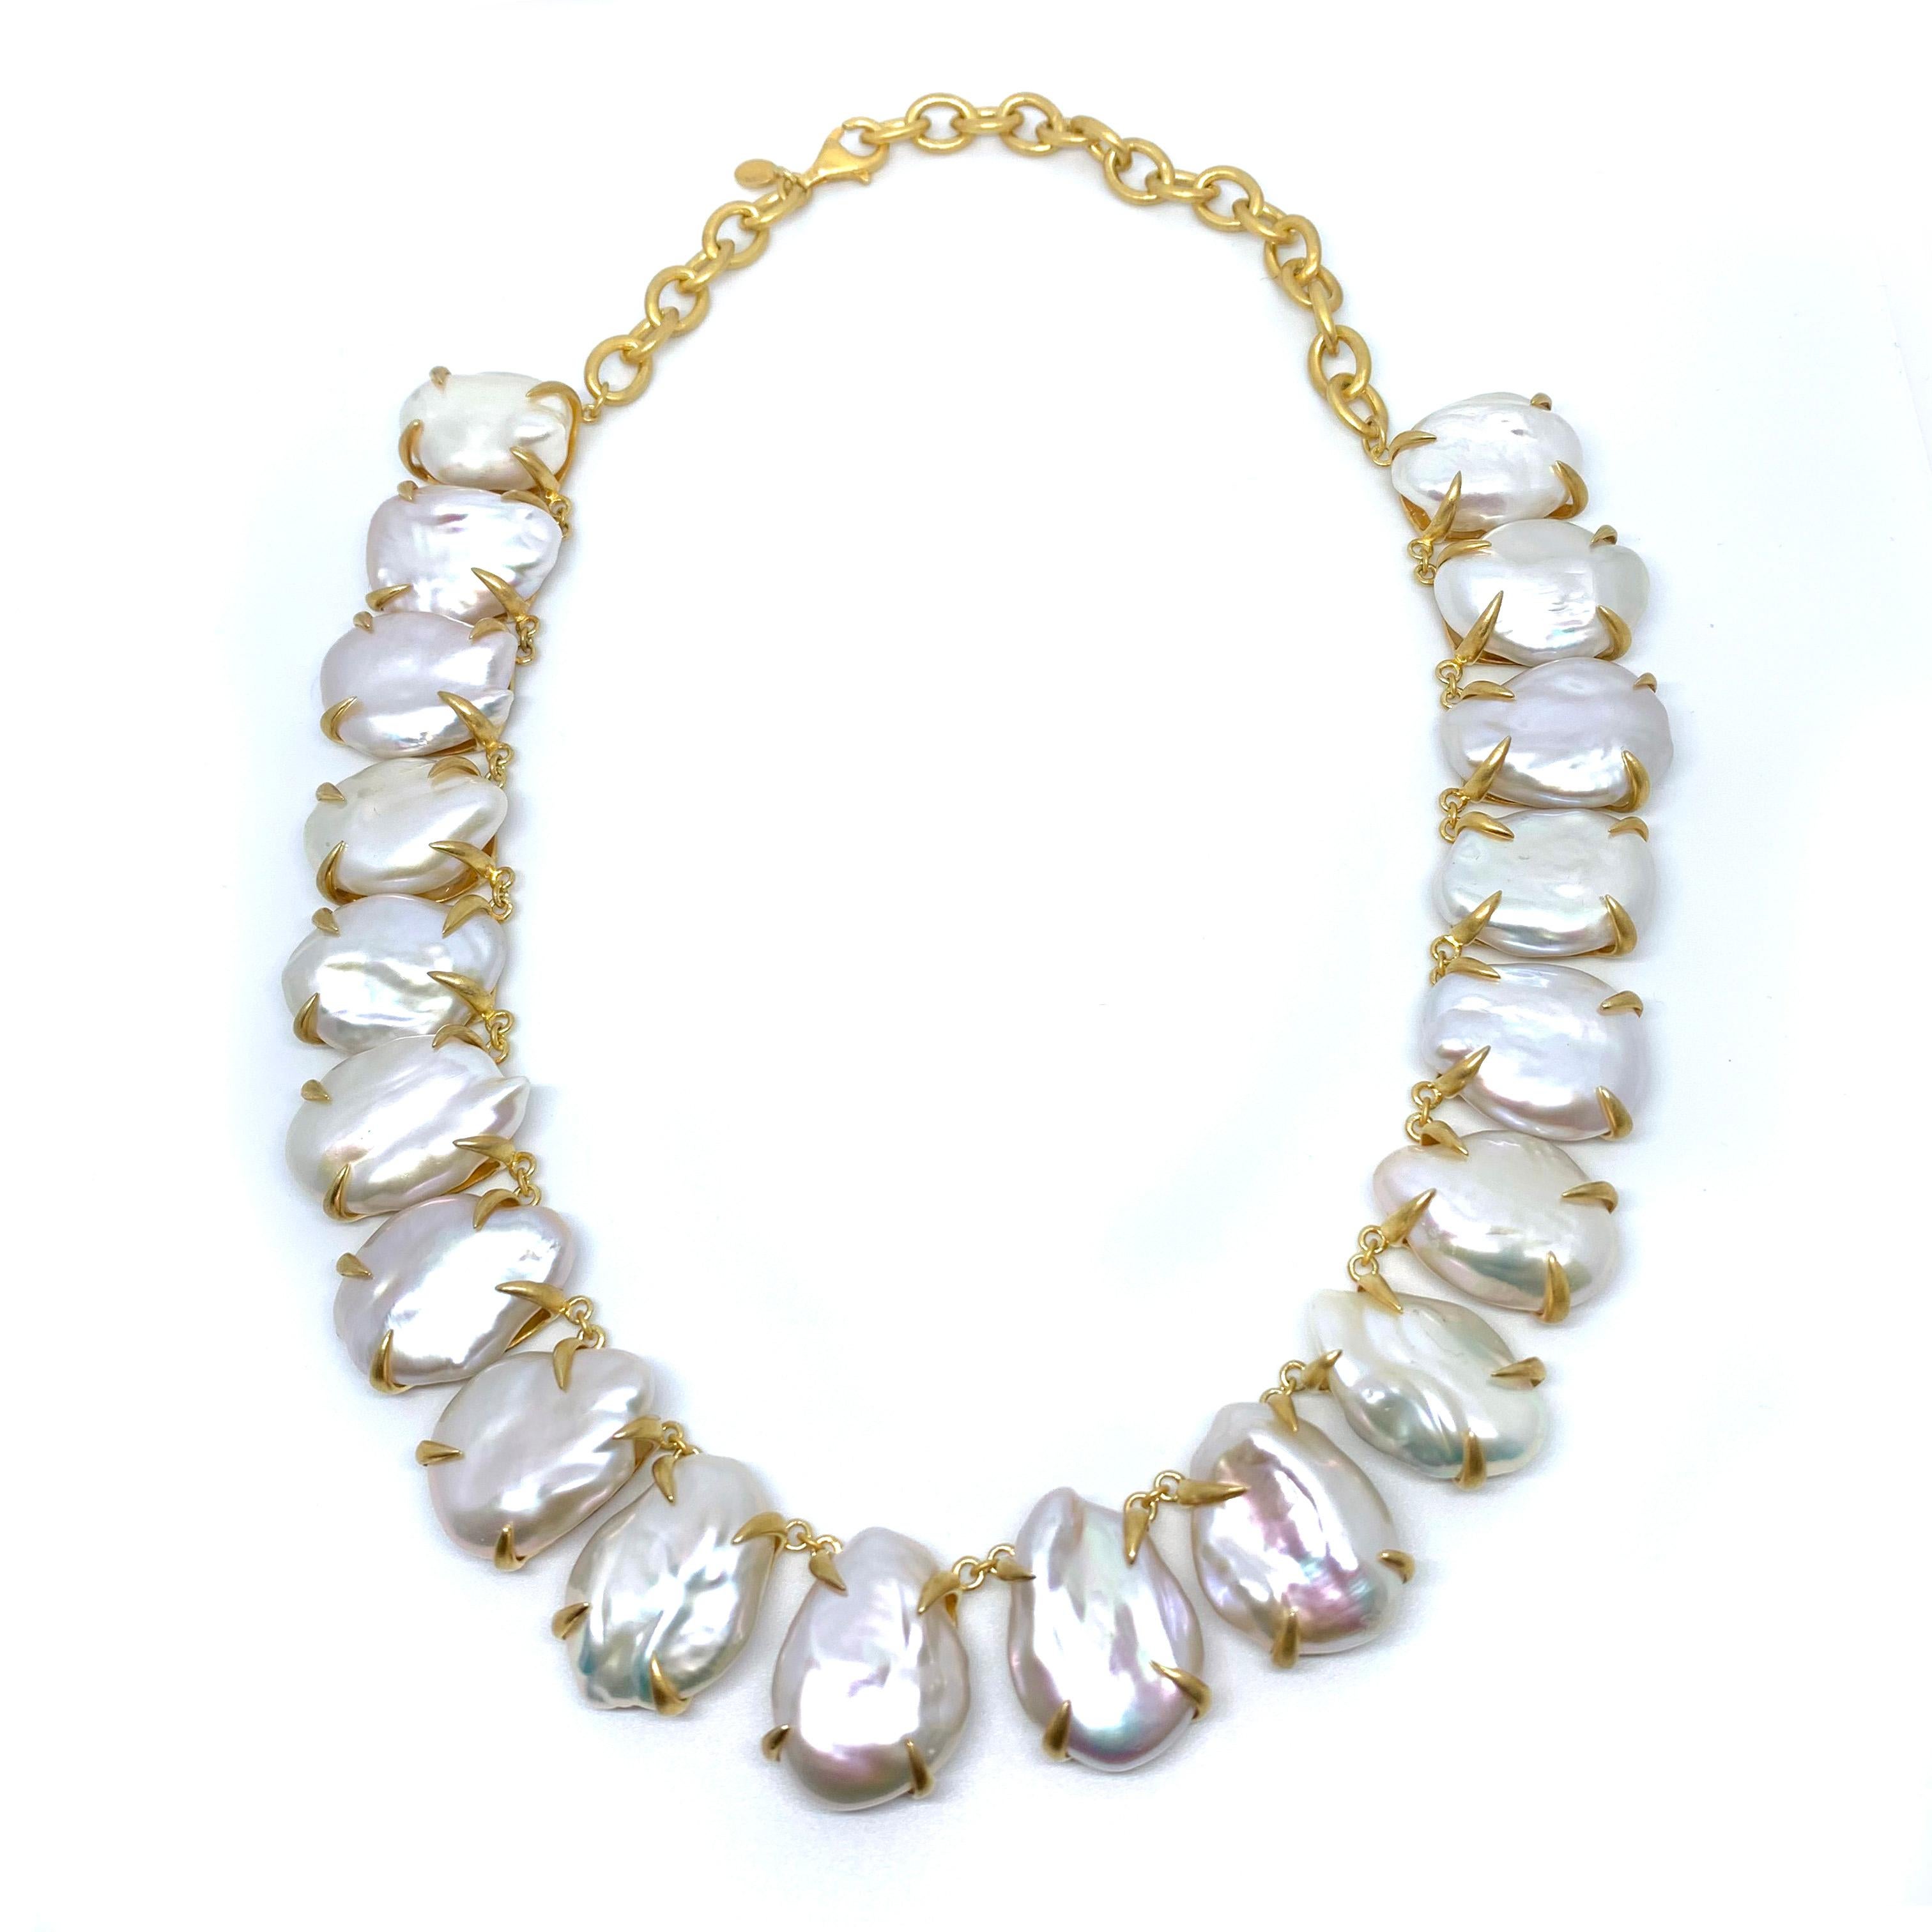 Superbe collier de grandes perles baroques blanches lustrées. Le collier comprend 19 pièces de magnifiques perles baroques plates blanches de culture de haute qualité, serties dans un vermeil en or jaune 18 carats sur argent sterling avec finition